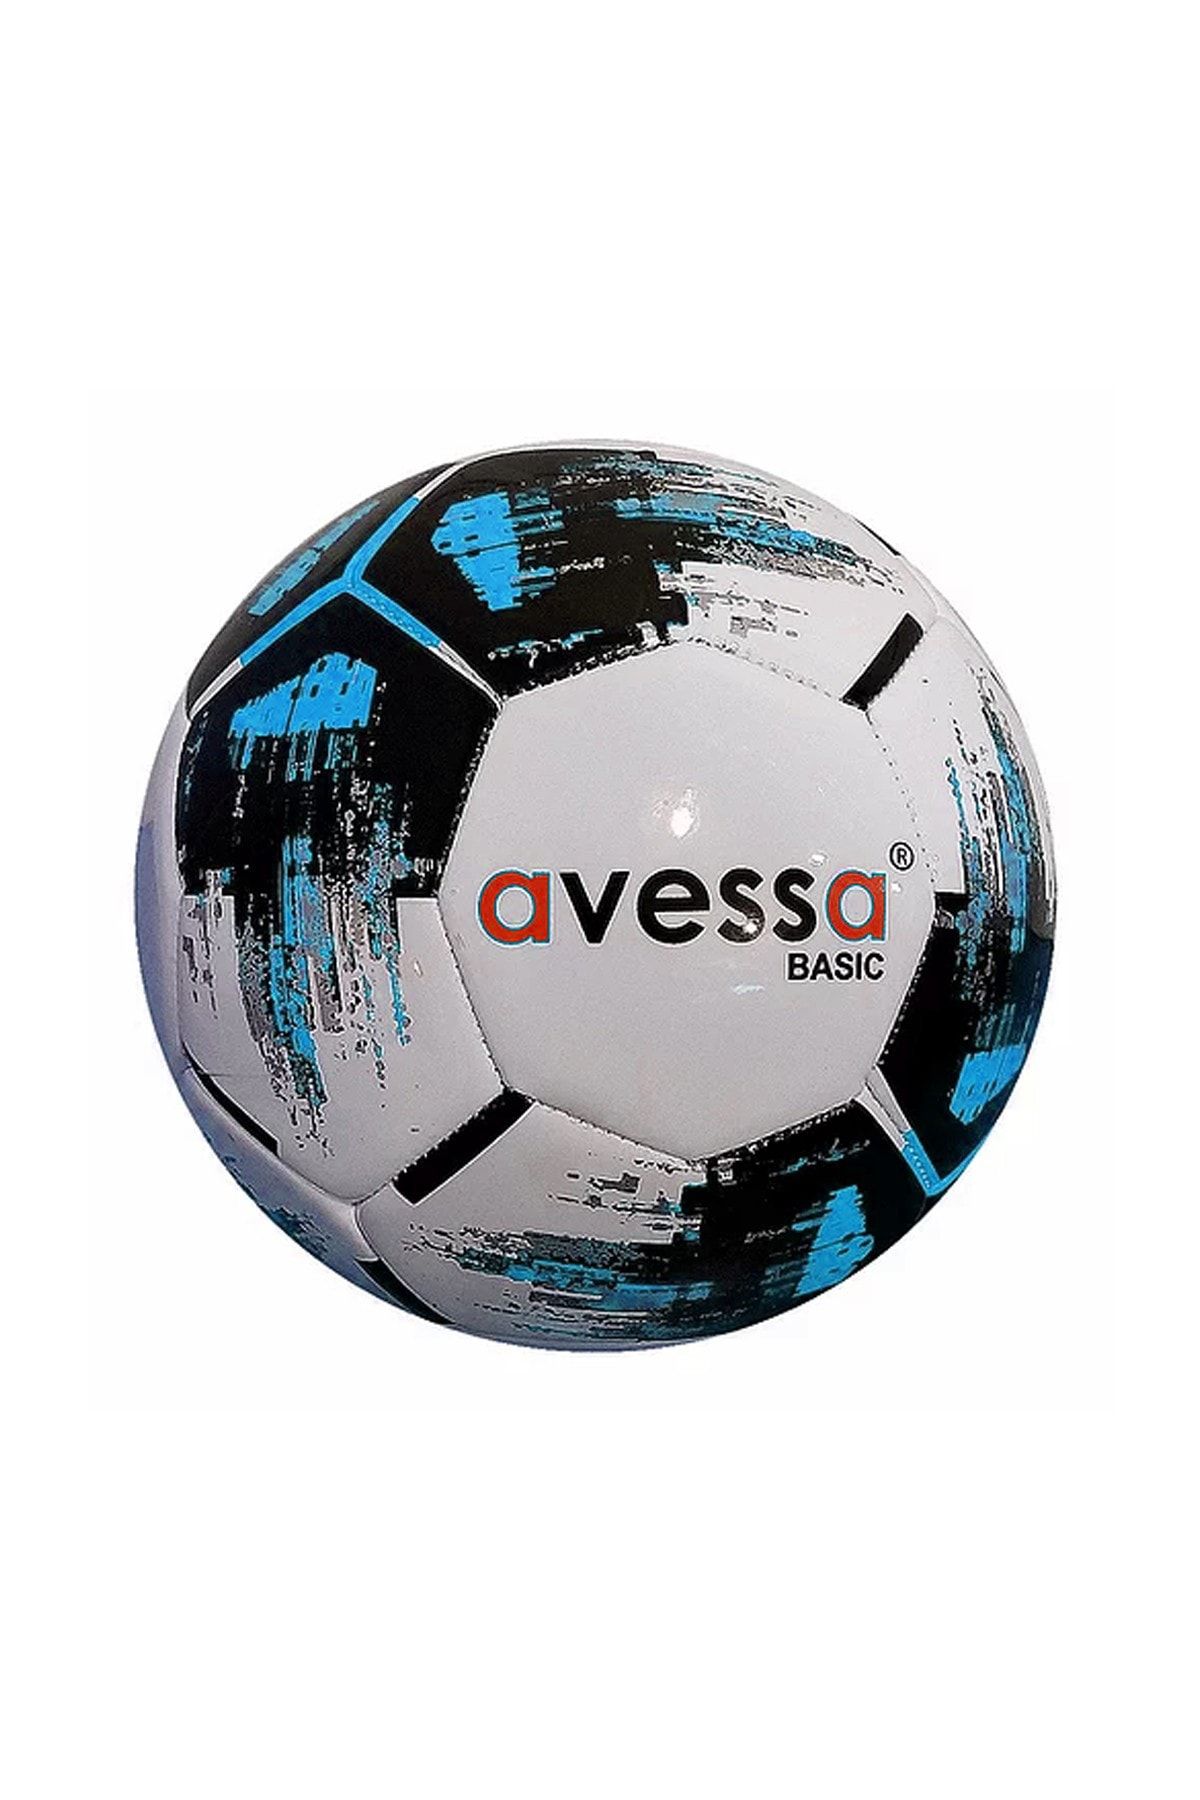 Avessa Basic 3 Numaralı Futbol Topu Mavi Av-0430-421